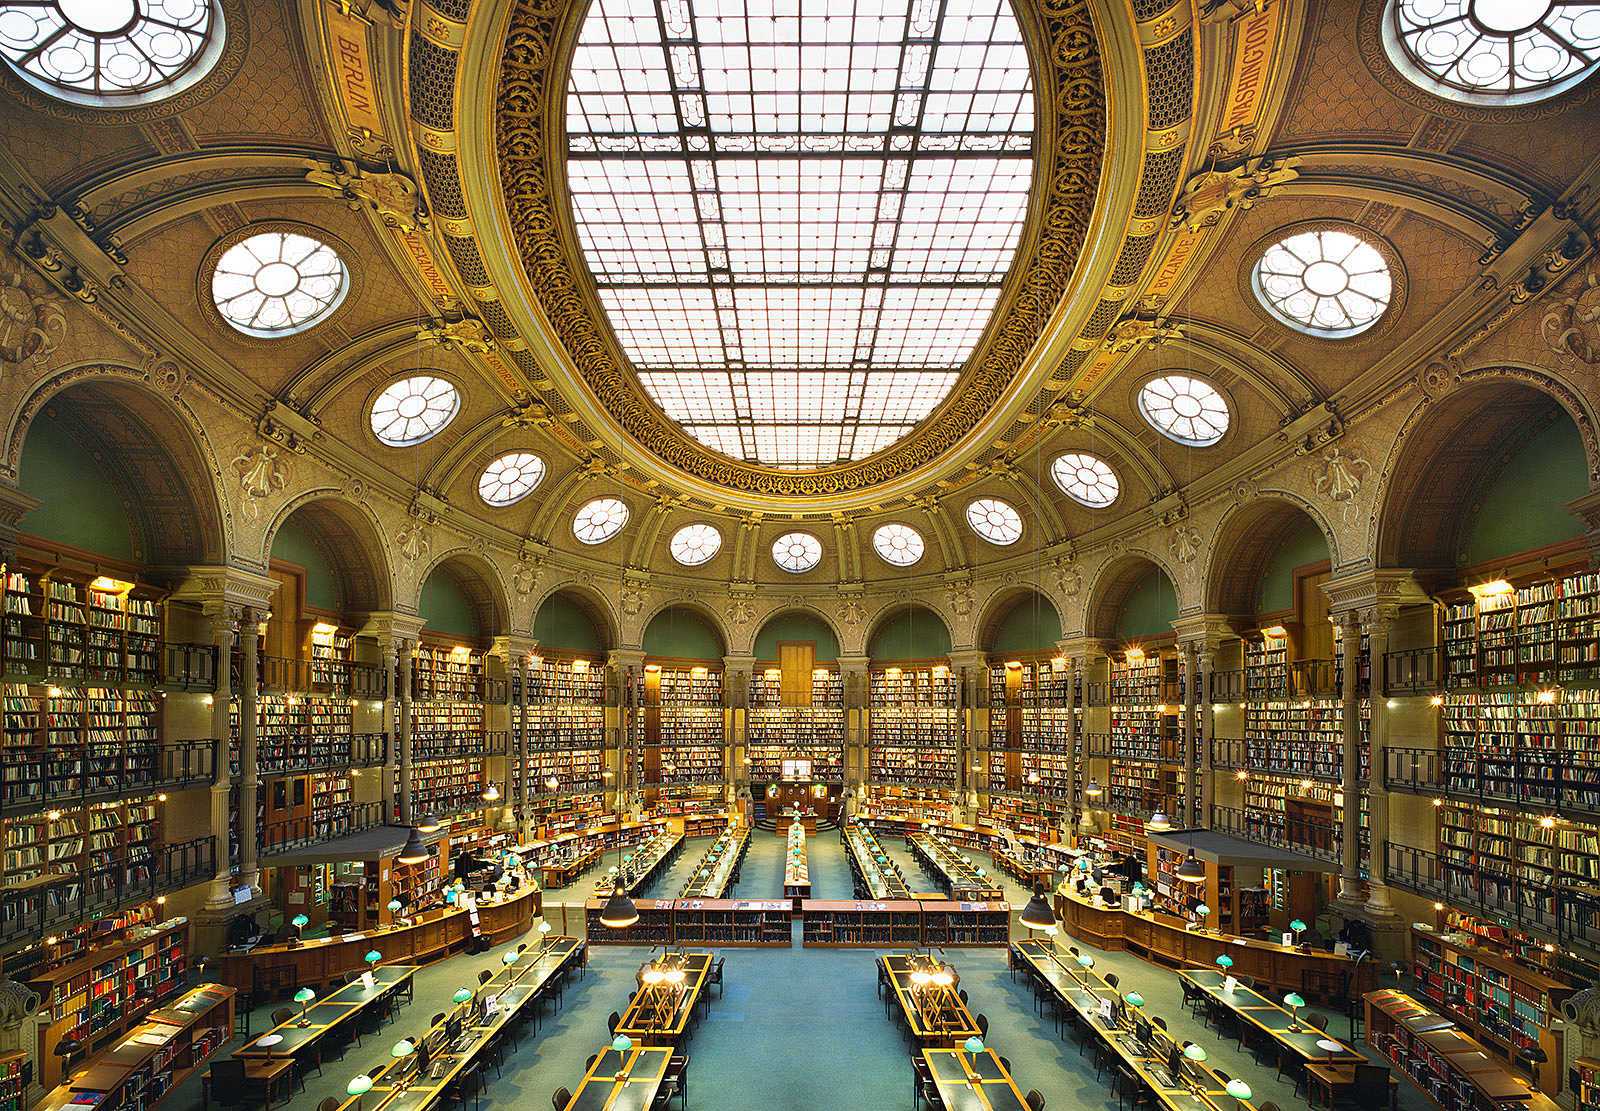 1600x1111, 378 Kb / Париж, библиотека, зал, окна, свет, арки, столы, книги